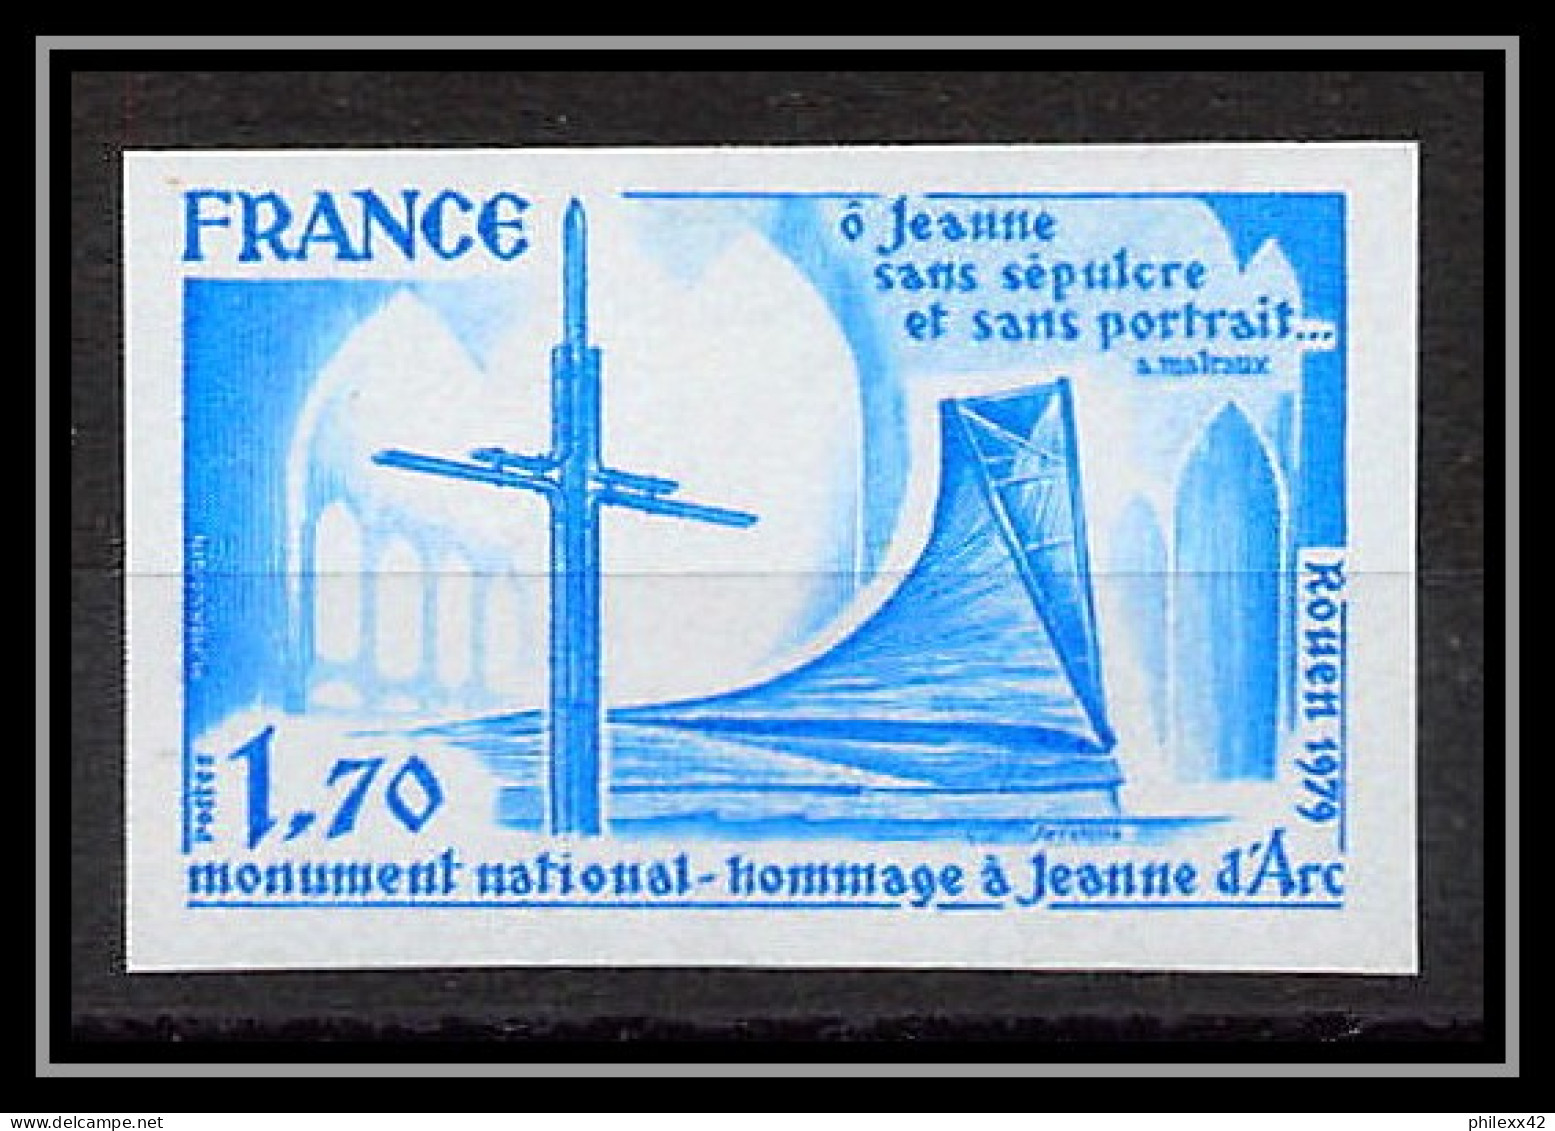 France N°2051 Jeanne D'Arc Monument National Rouen 1979 Essai Trial Proof Non Dentelé ** Imperf - Farbtests 1945-…